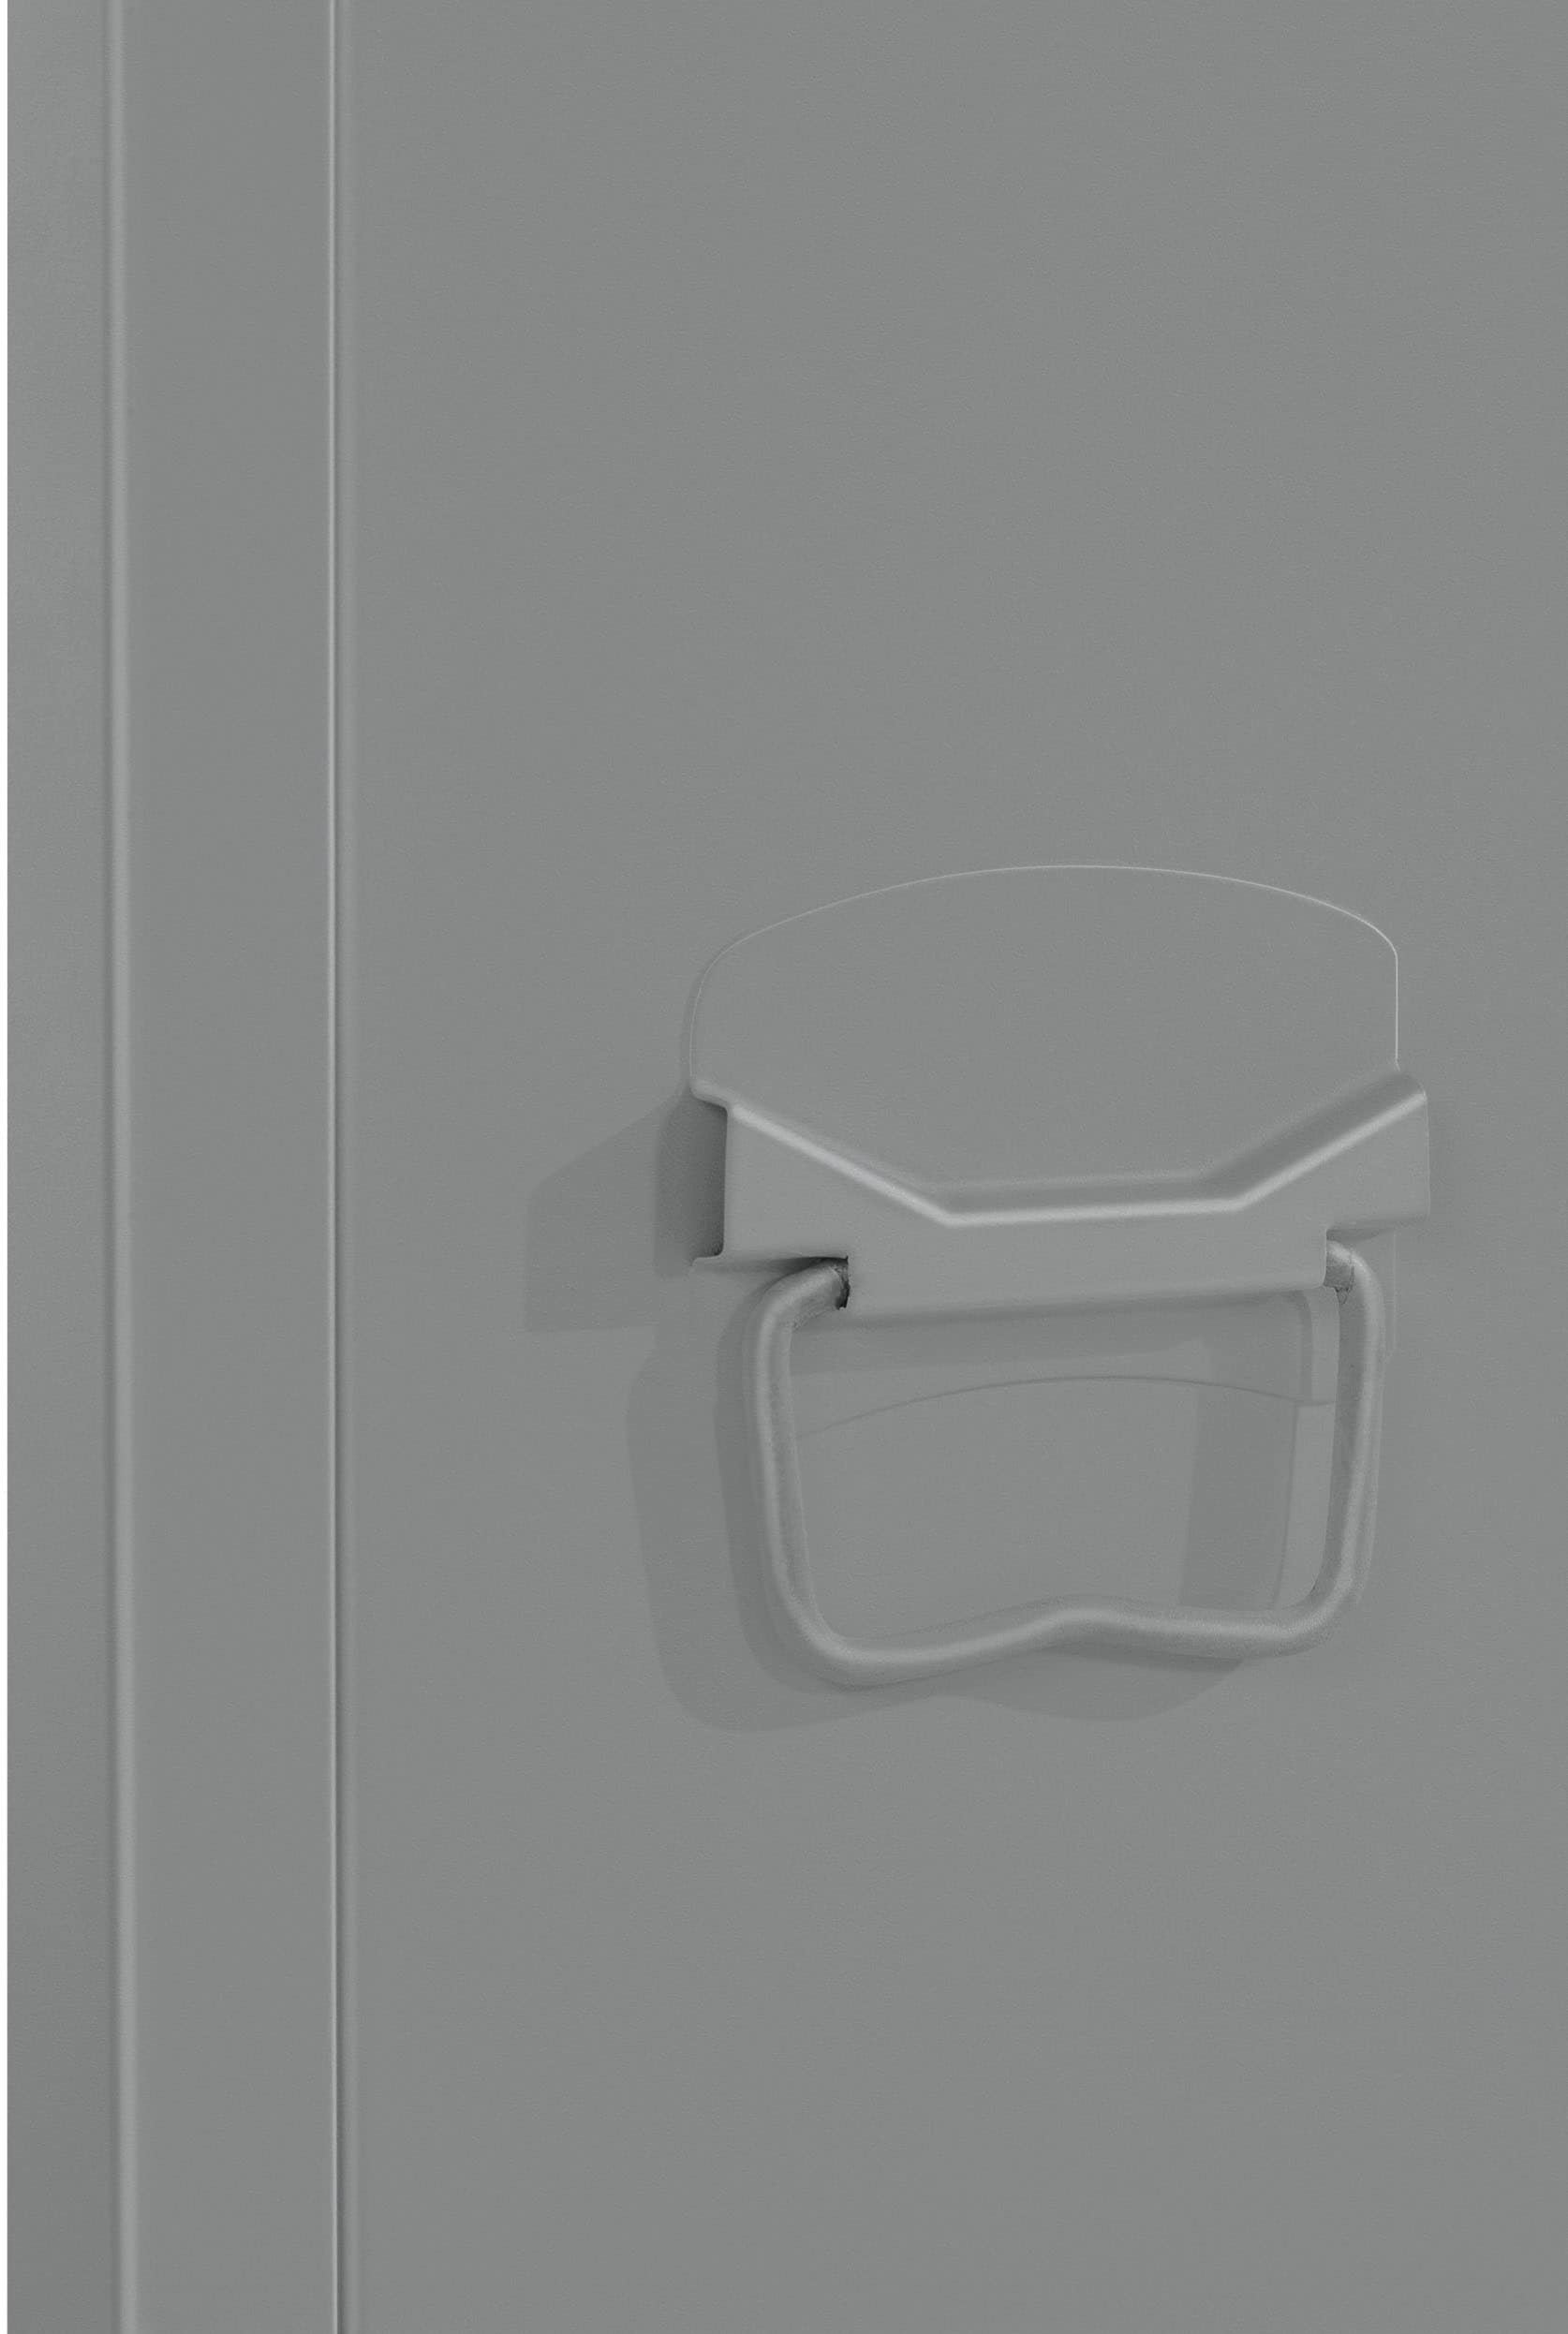 andas Hochschrank »Jensjorg«, Hochschrank aus Metall, 2 x Einlegeböden  hinter der Tür, Höhe 180 cm online kaufen